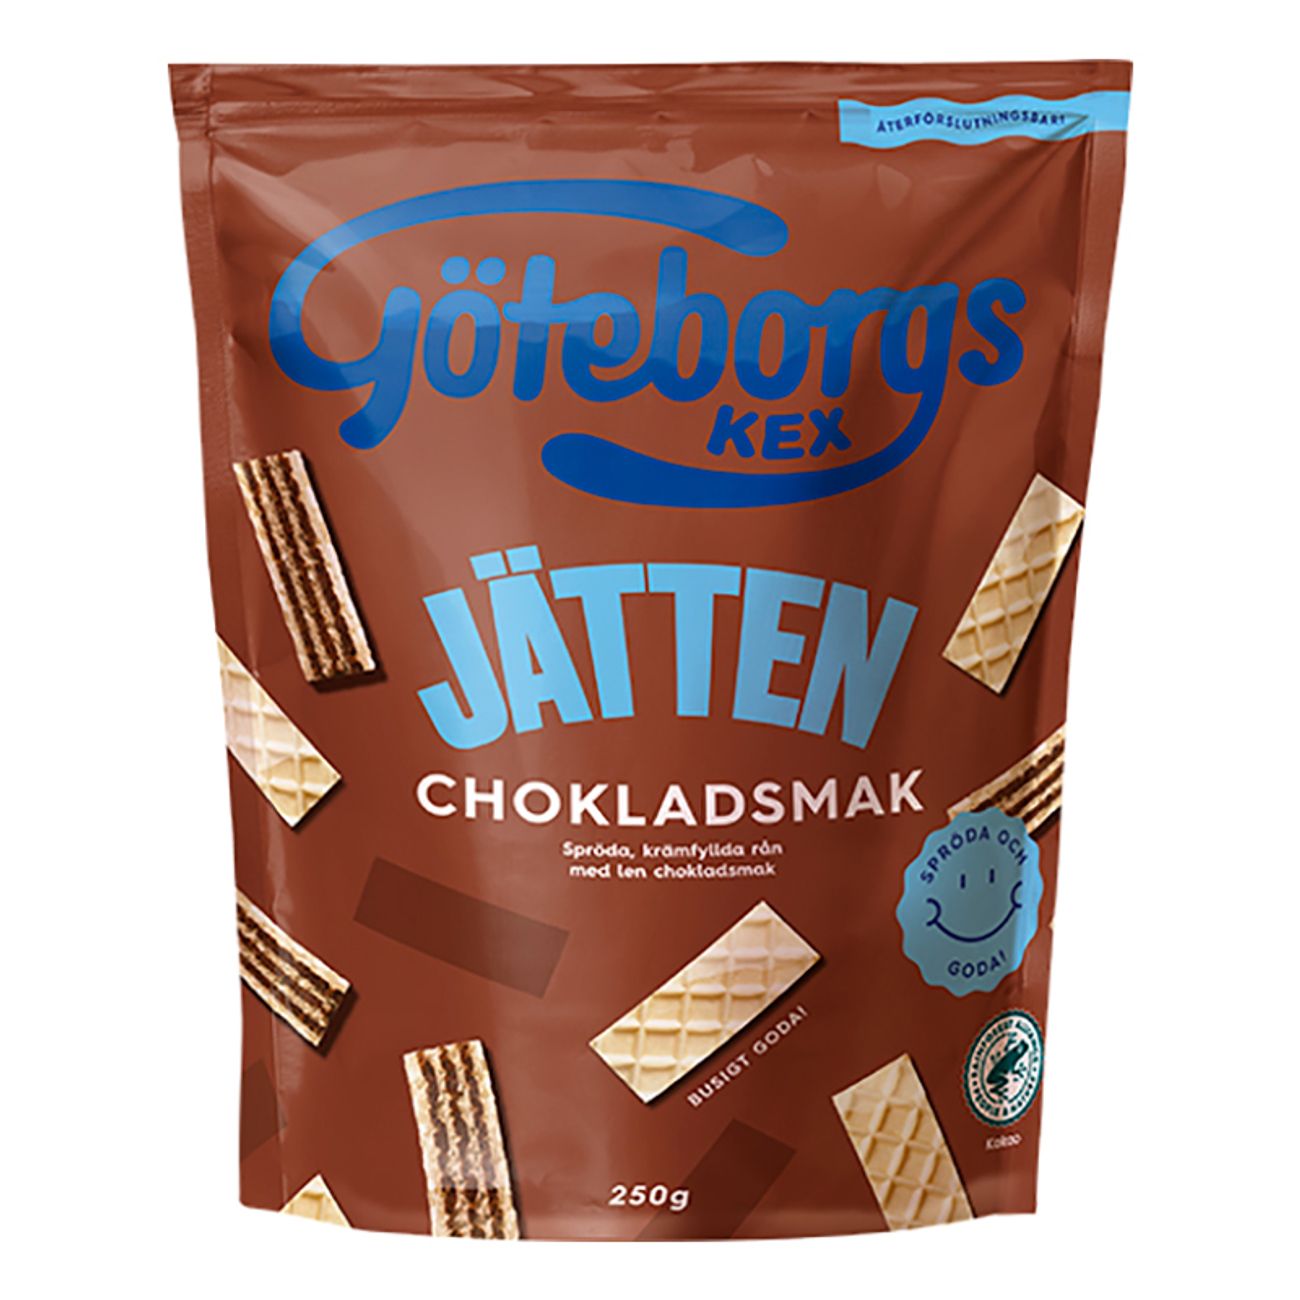 jatten-choklad-kex-79857-1